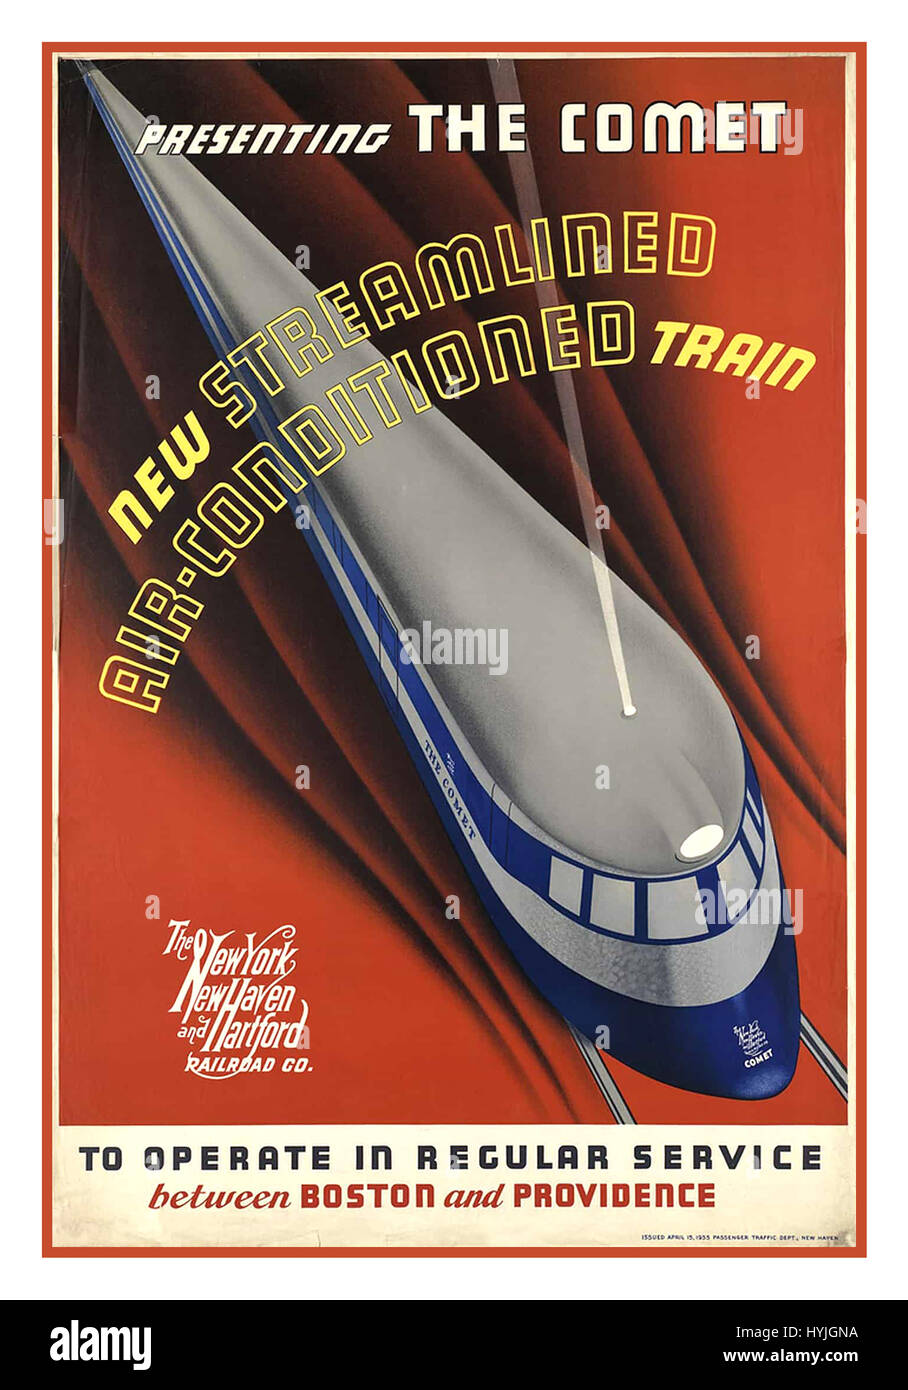 1935 Affiche publicitaire de la New York, New Haven and Hartford Railroad Co nommé la comète, Nouveau train climatisé. C'est l'affiche officielle de la première "bullet train" pour fonctionner à New York. Banque D'Images